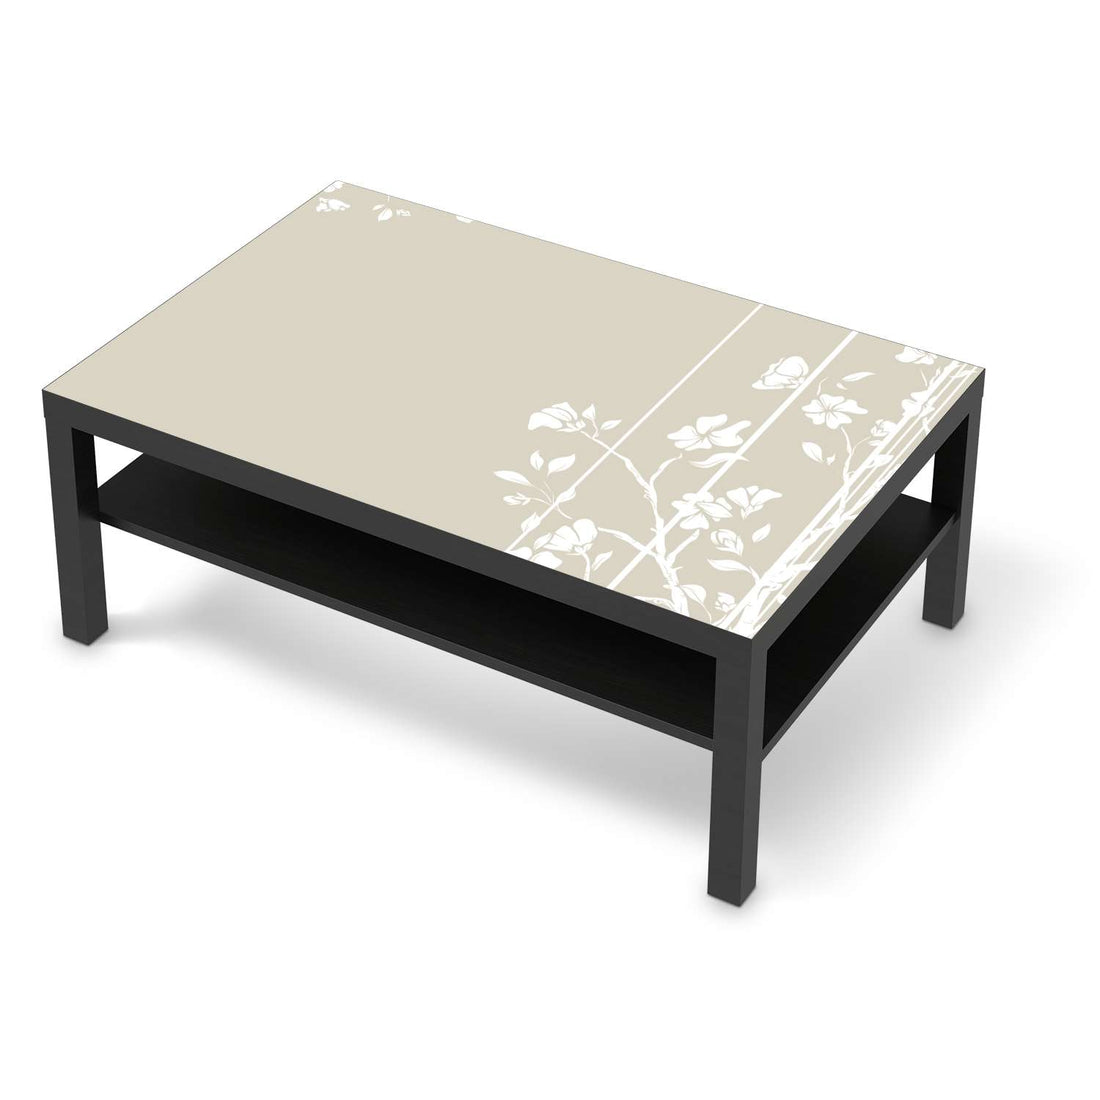 Klebefolie Florals Plain 3 - IKEA Lack Tisch 118x78 cm - schwarz